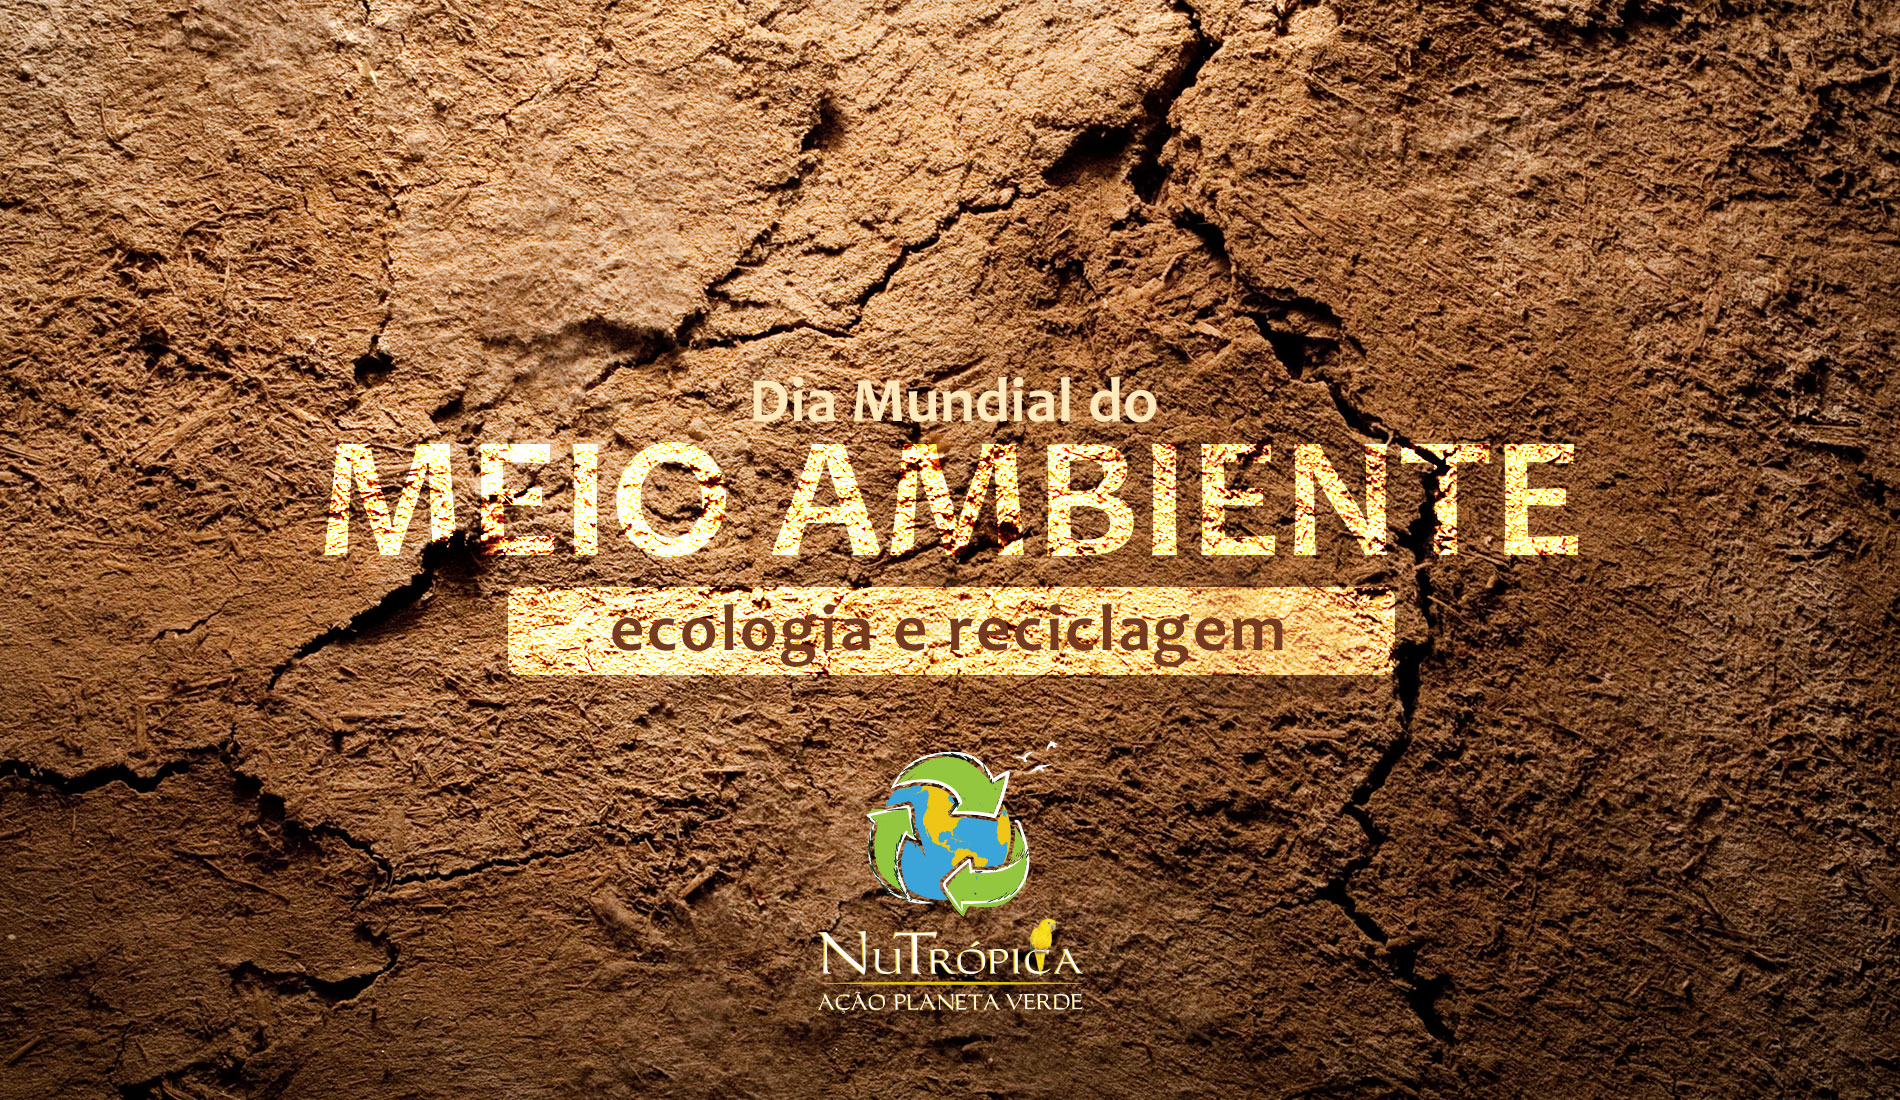 Dia Mundial do Meio Ambiente, Ecologia e Reciclagem